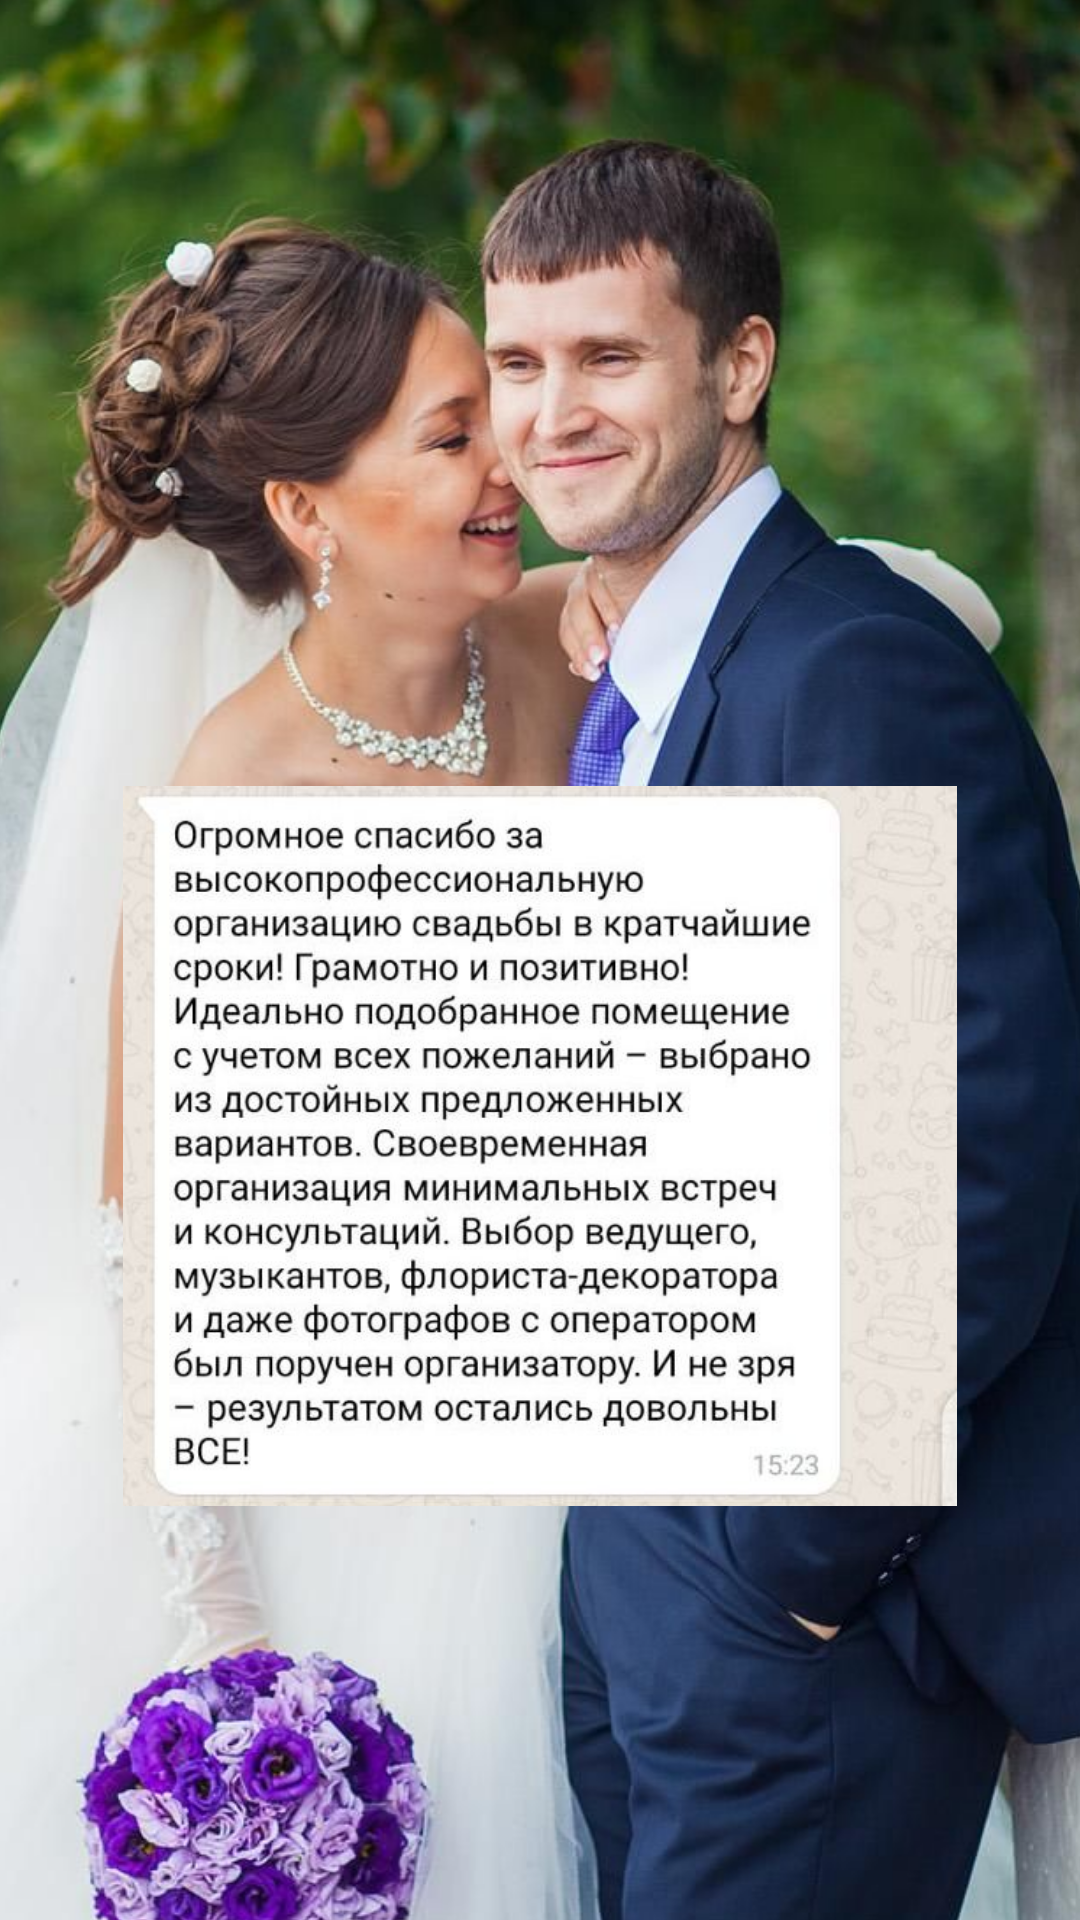 Организация свадьбы в Омске
от компании Pandaevent